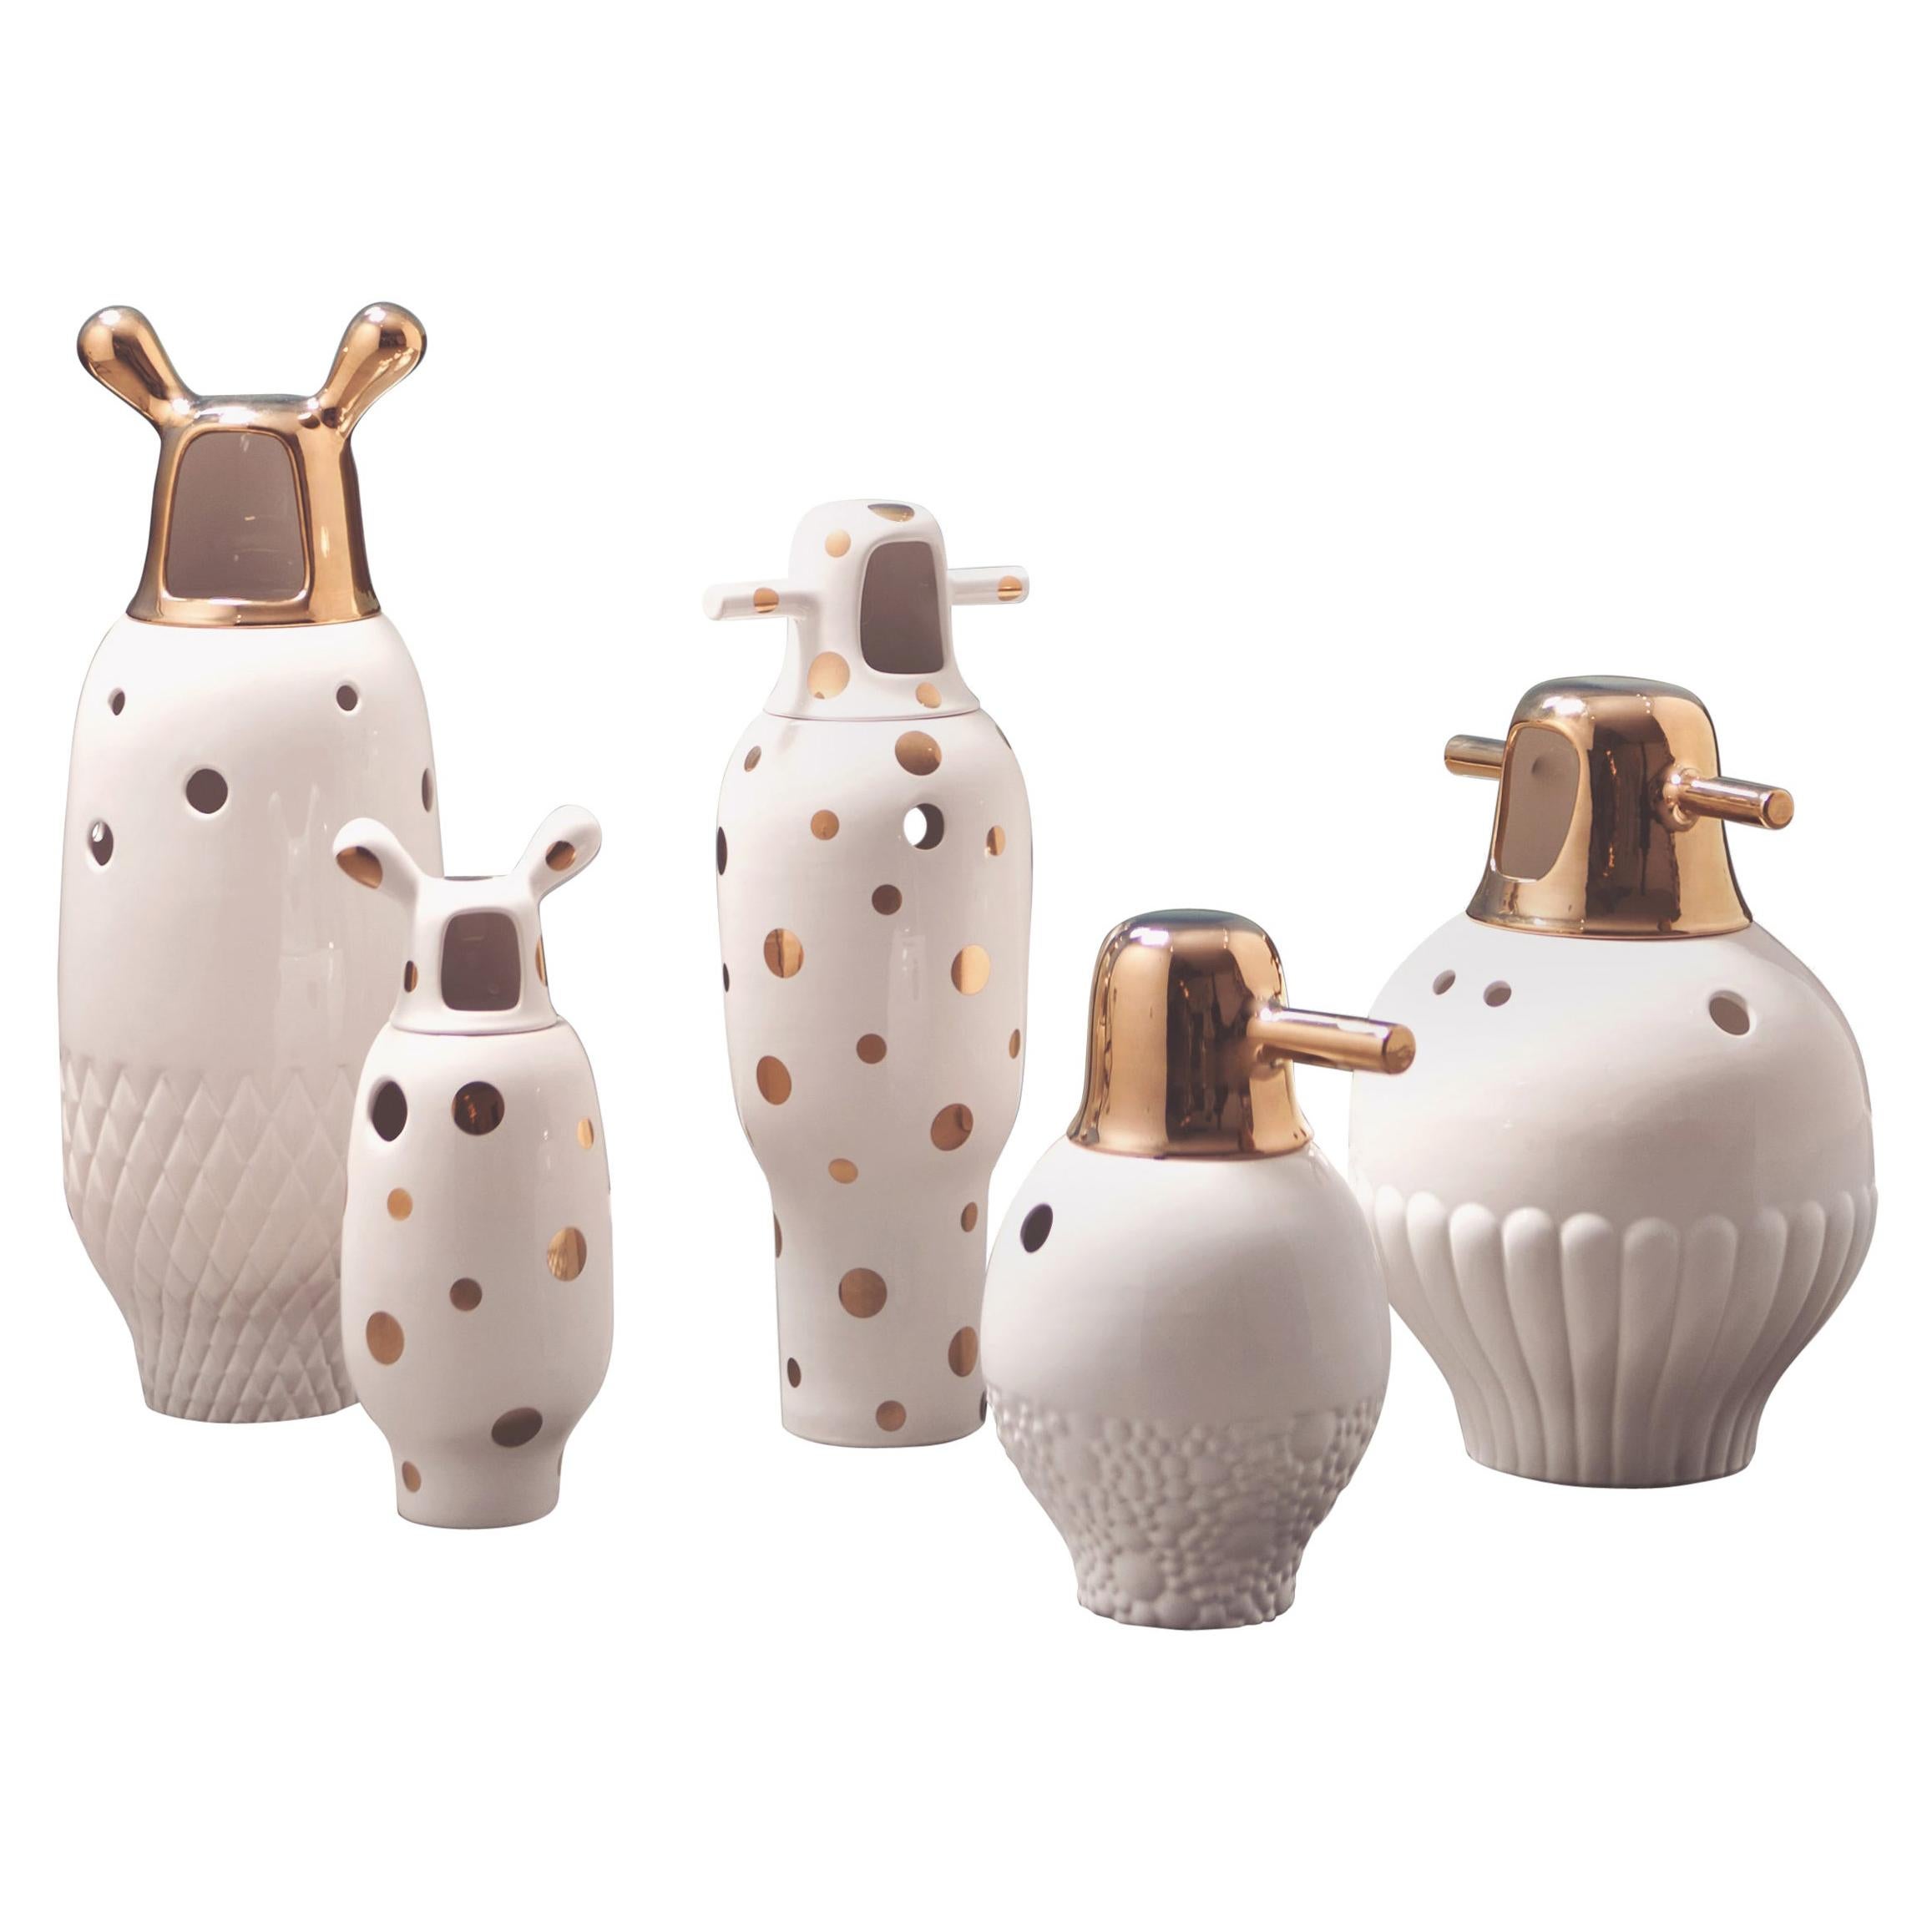 Set of Jaime Hayon Glazed Stoneware 'Showtime 10' Vases for BD ENVIOS